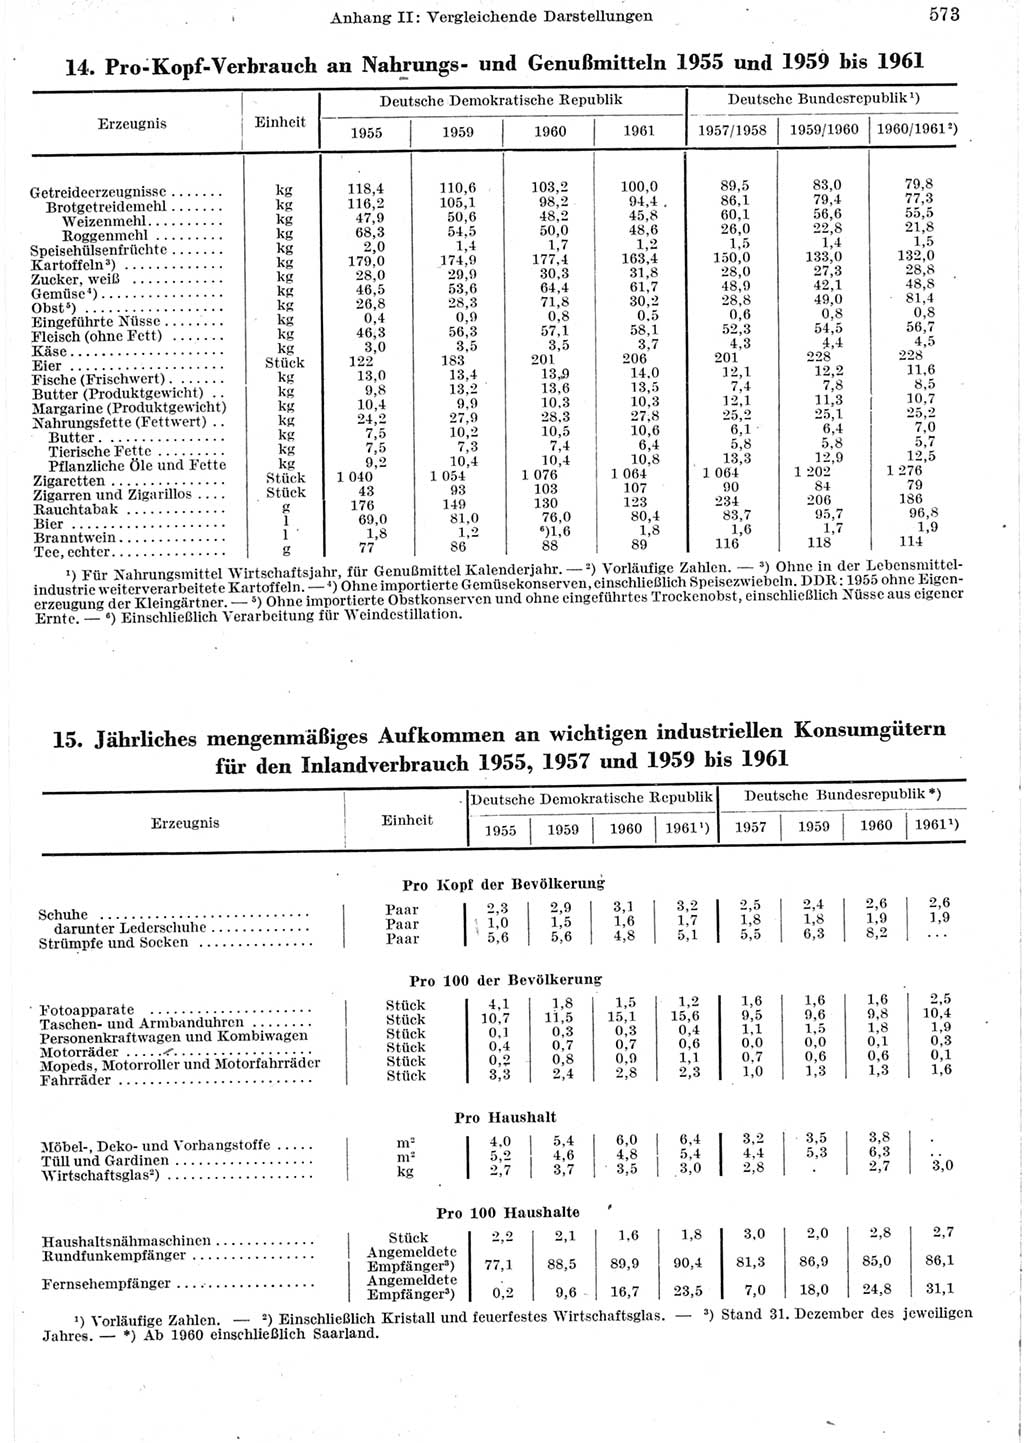 Statistisches Jahrbuch der Deutschen Demokratischen Republik (DDR) 1962, Seite 573 (Stat. Jb. DDR 1962, S. 573)